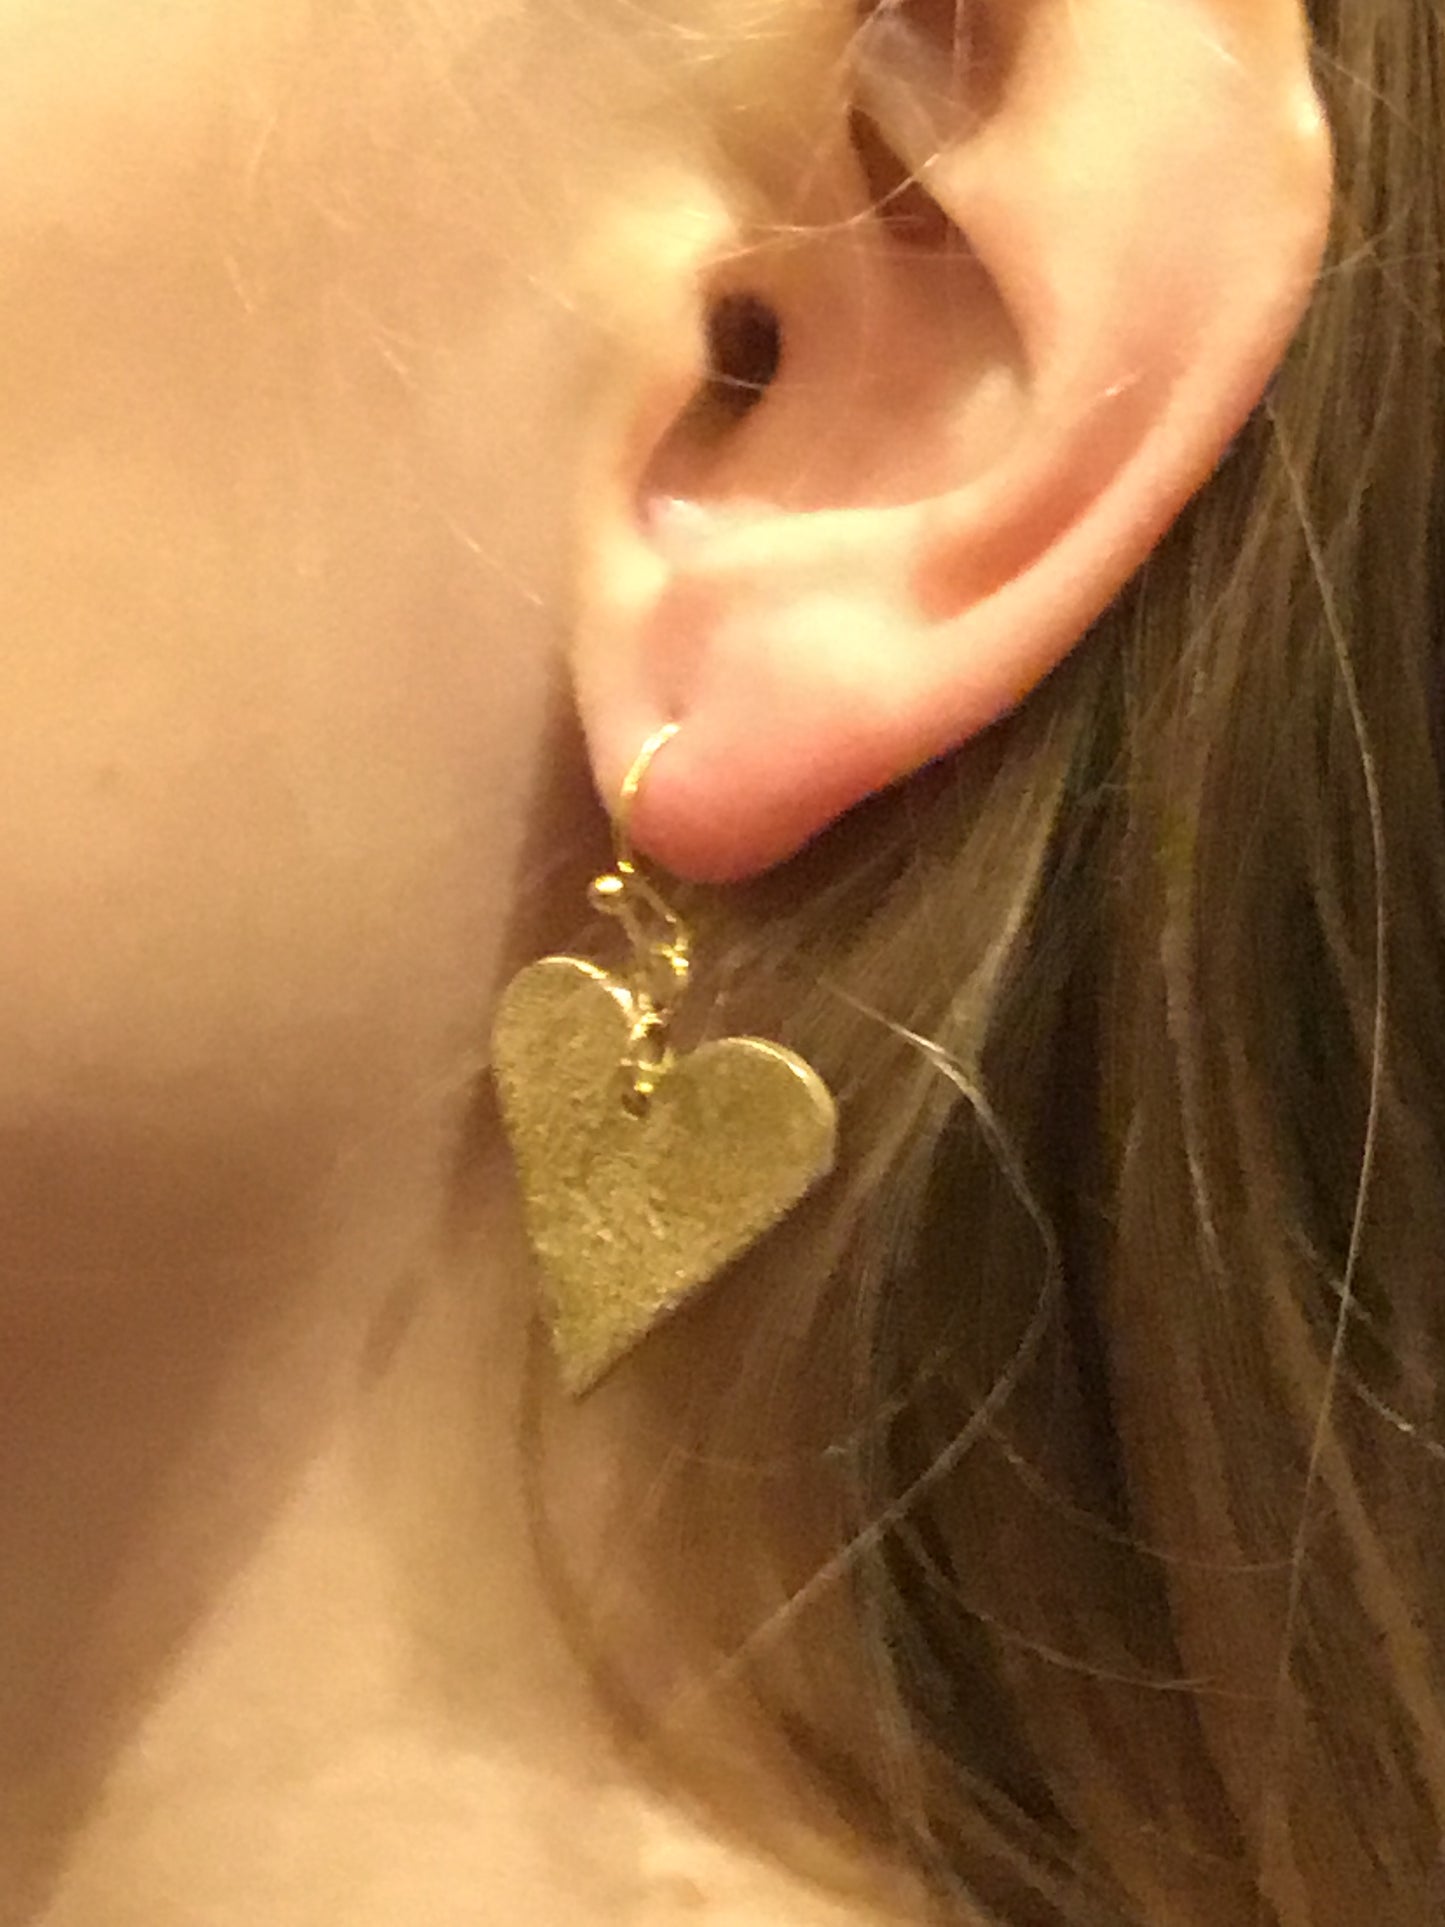 Bronze heart earrings